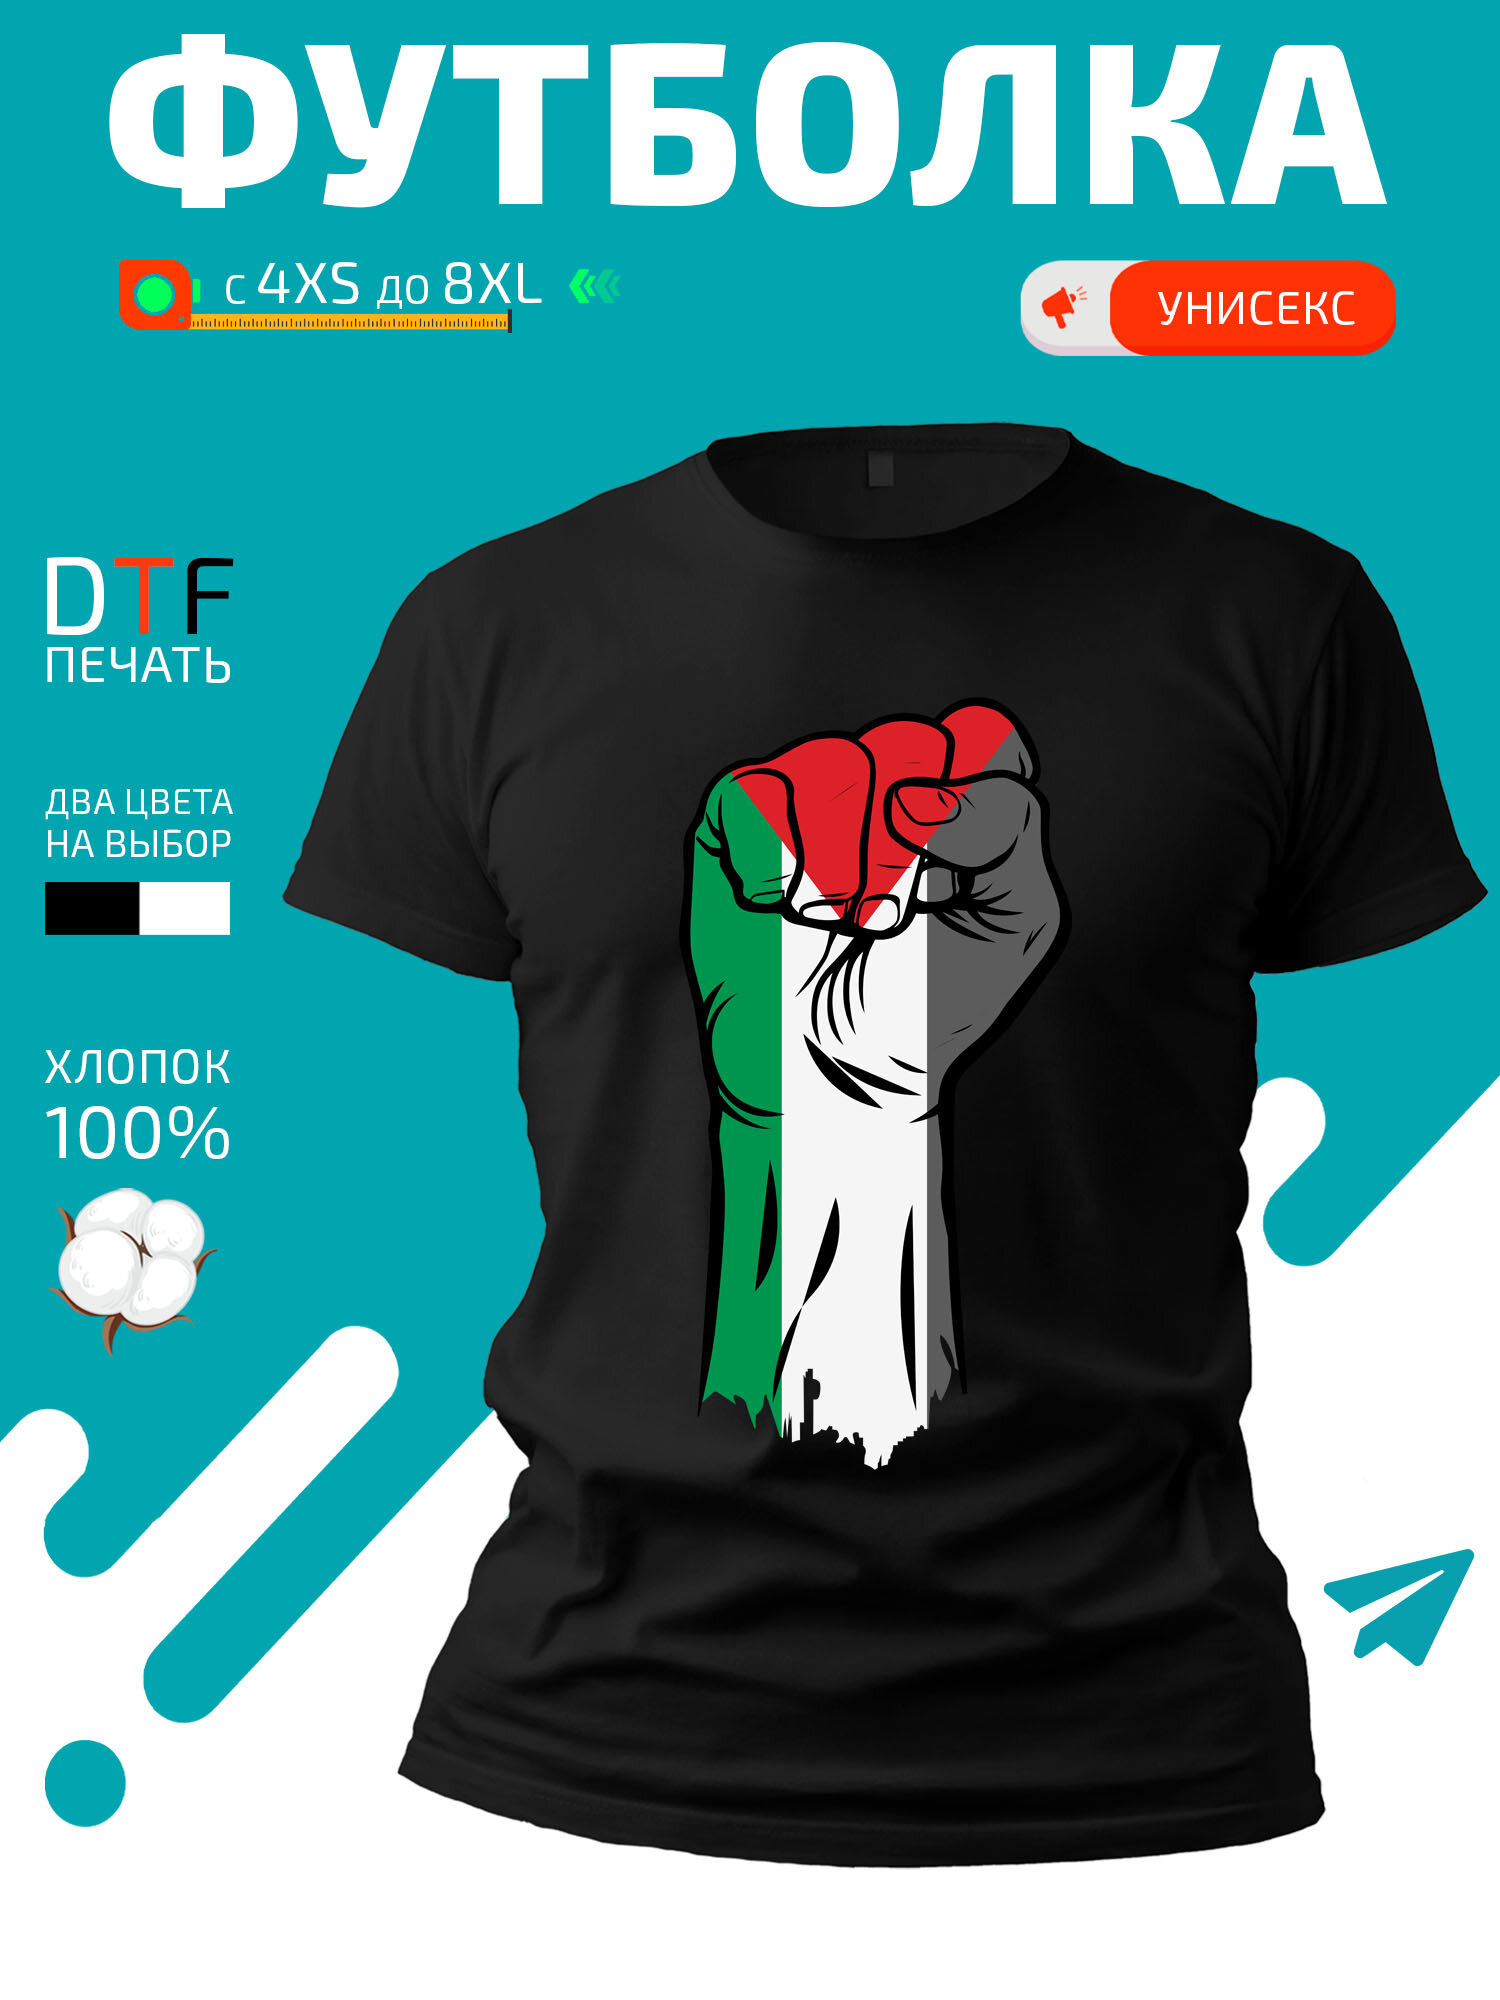 Футболка Кулак цвета флага Палестины